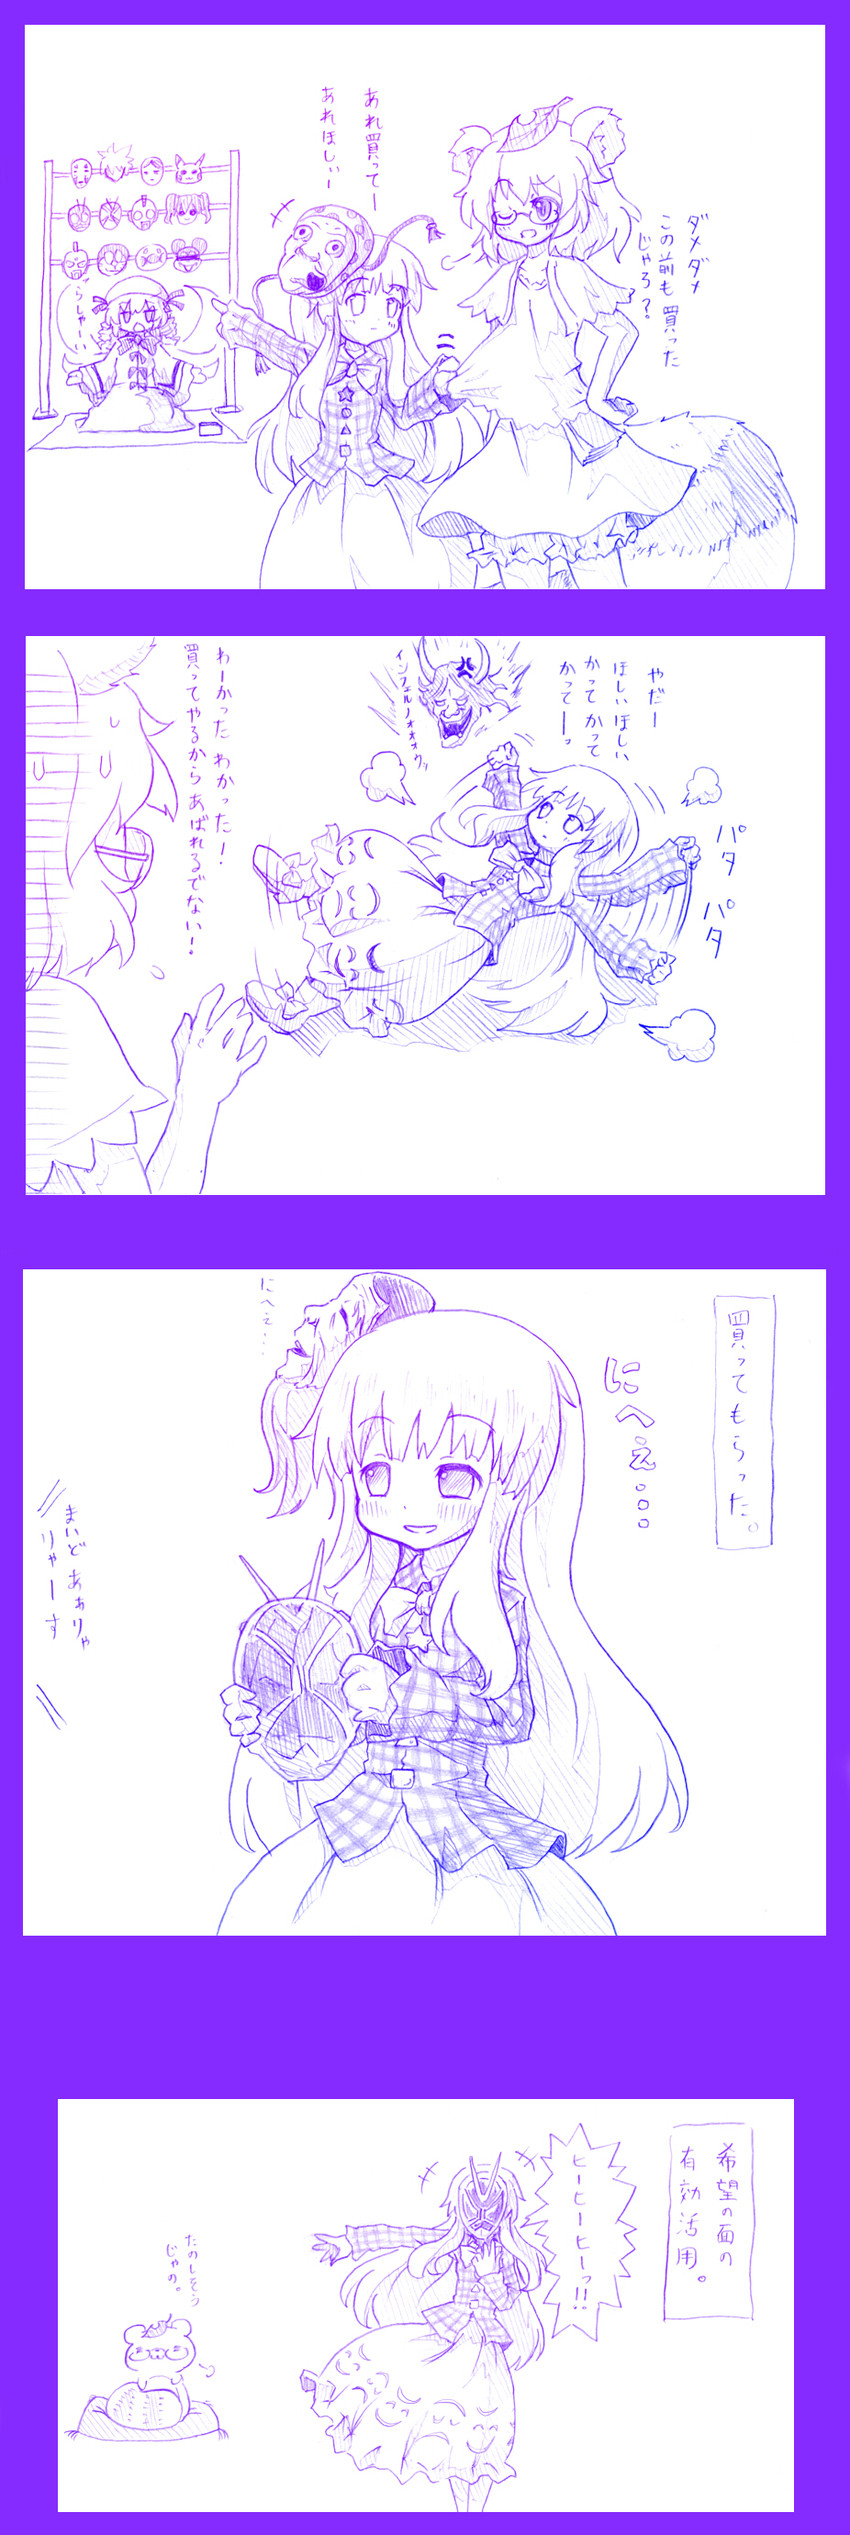 pikachu, hata no kokoro, futatsuiwa mamizou, luna child, doraemon, and 6 more (touhou and 6 more) drawn by arinu